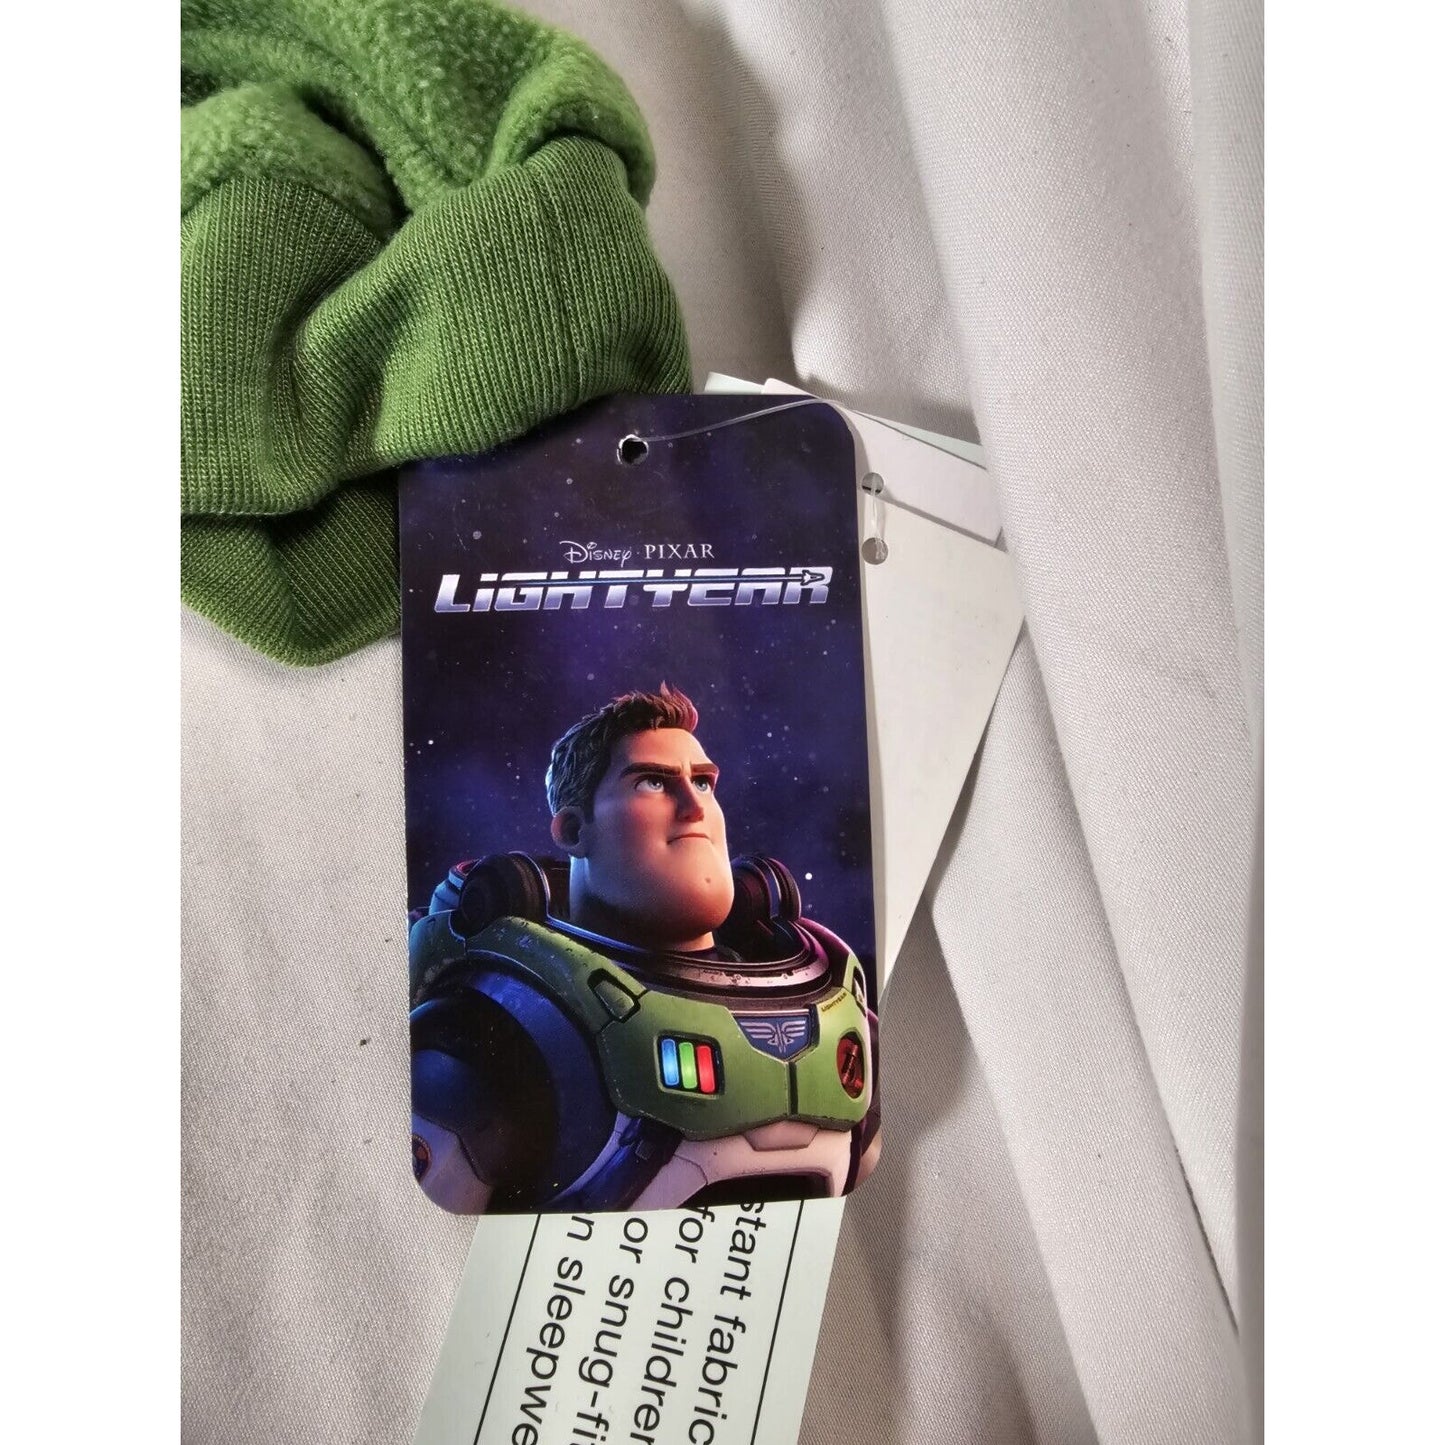 Boys Toy Story Buzz Lightyear Pajama Set with Cozy Socks - Blue M 8/10